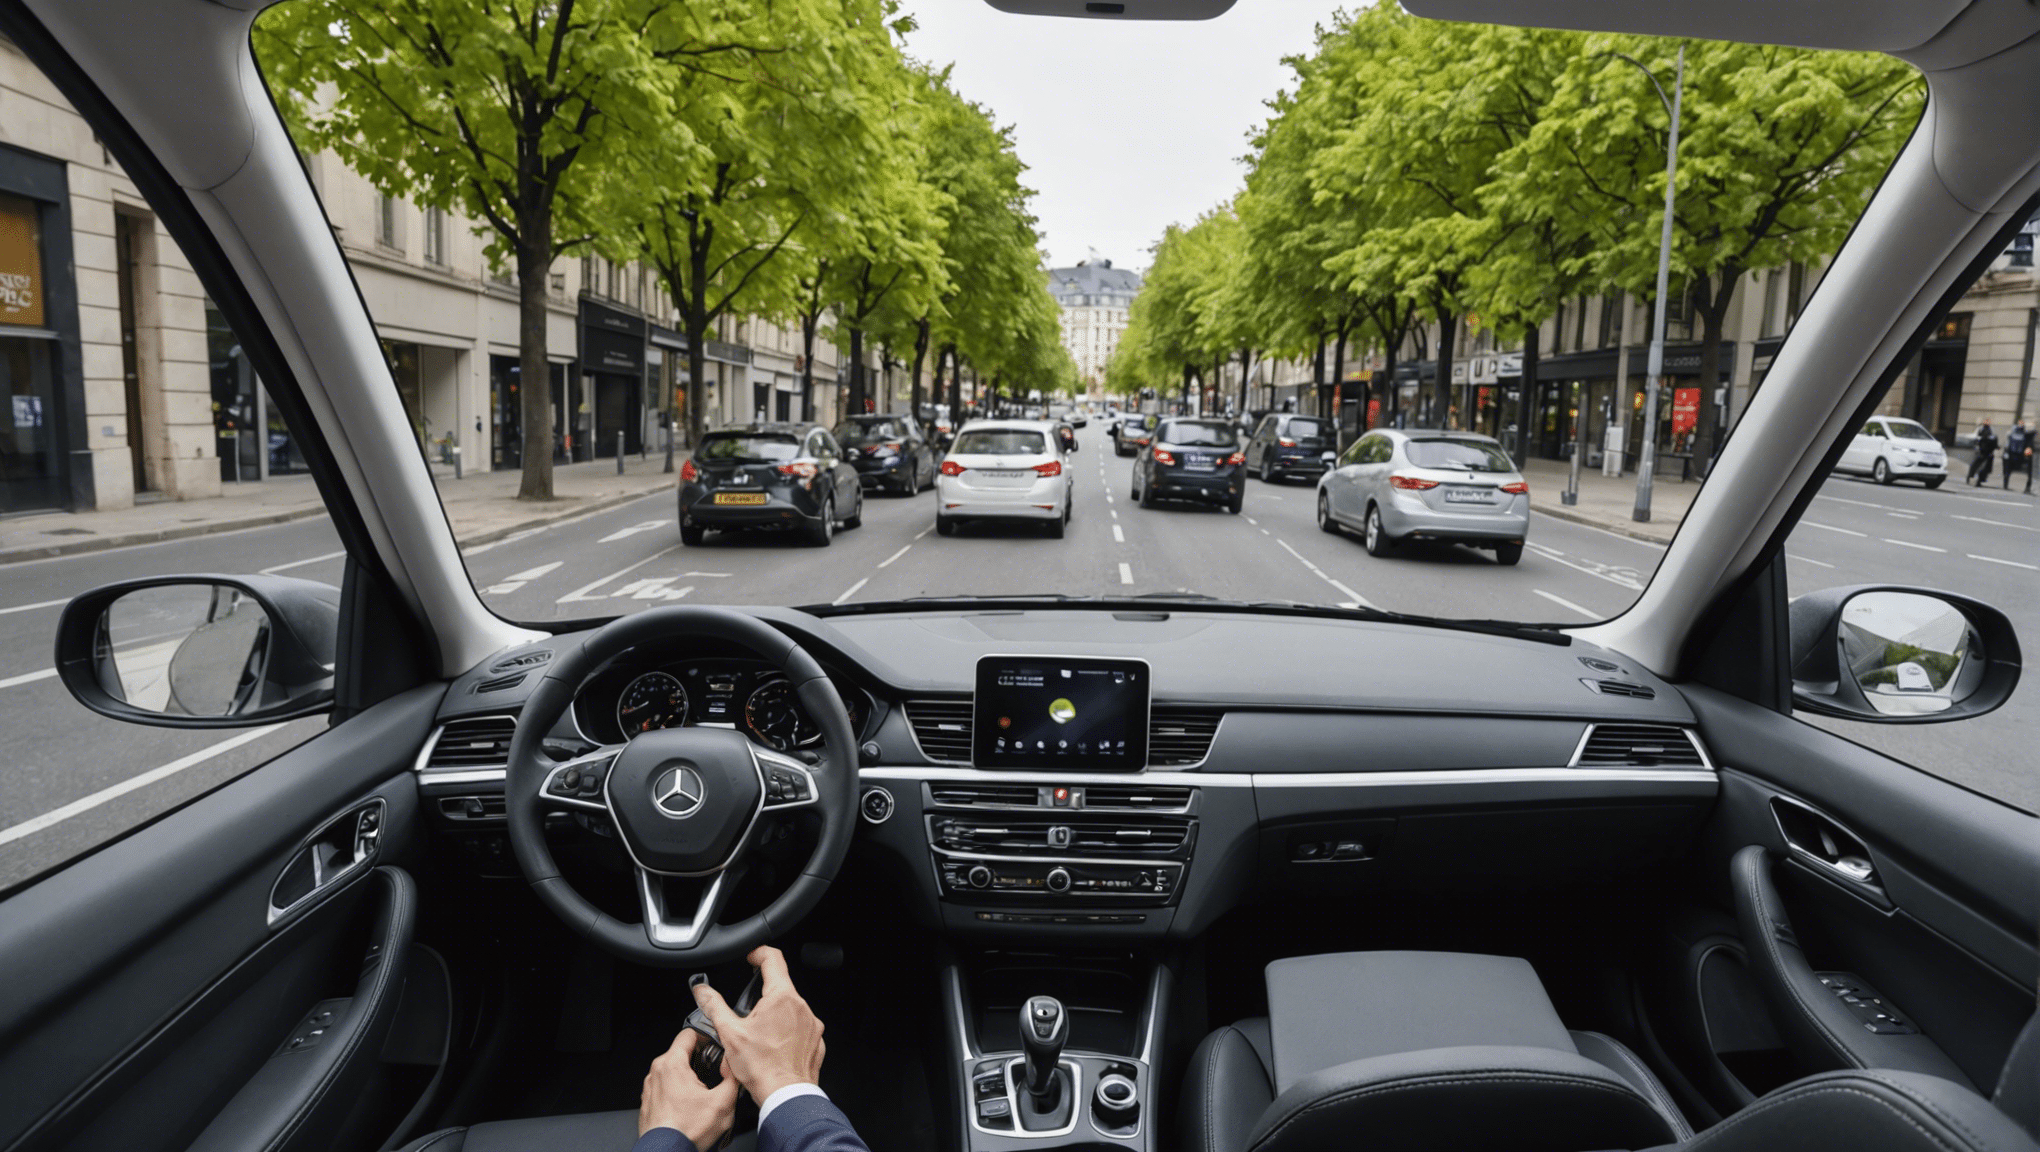 découvrez les avancées de la conduite autonome et son impact potentiel sur nos routes. une révolution technologique en perspective !